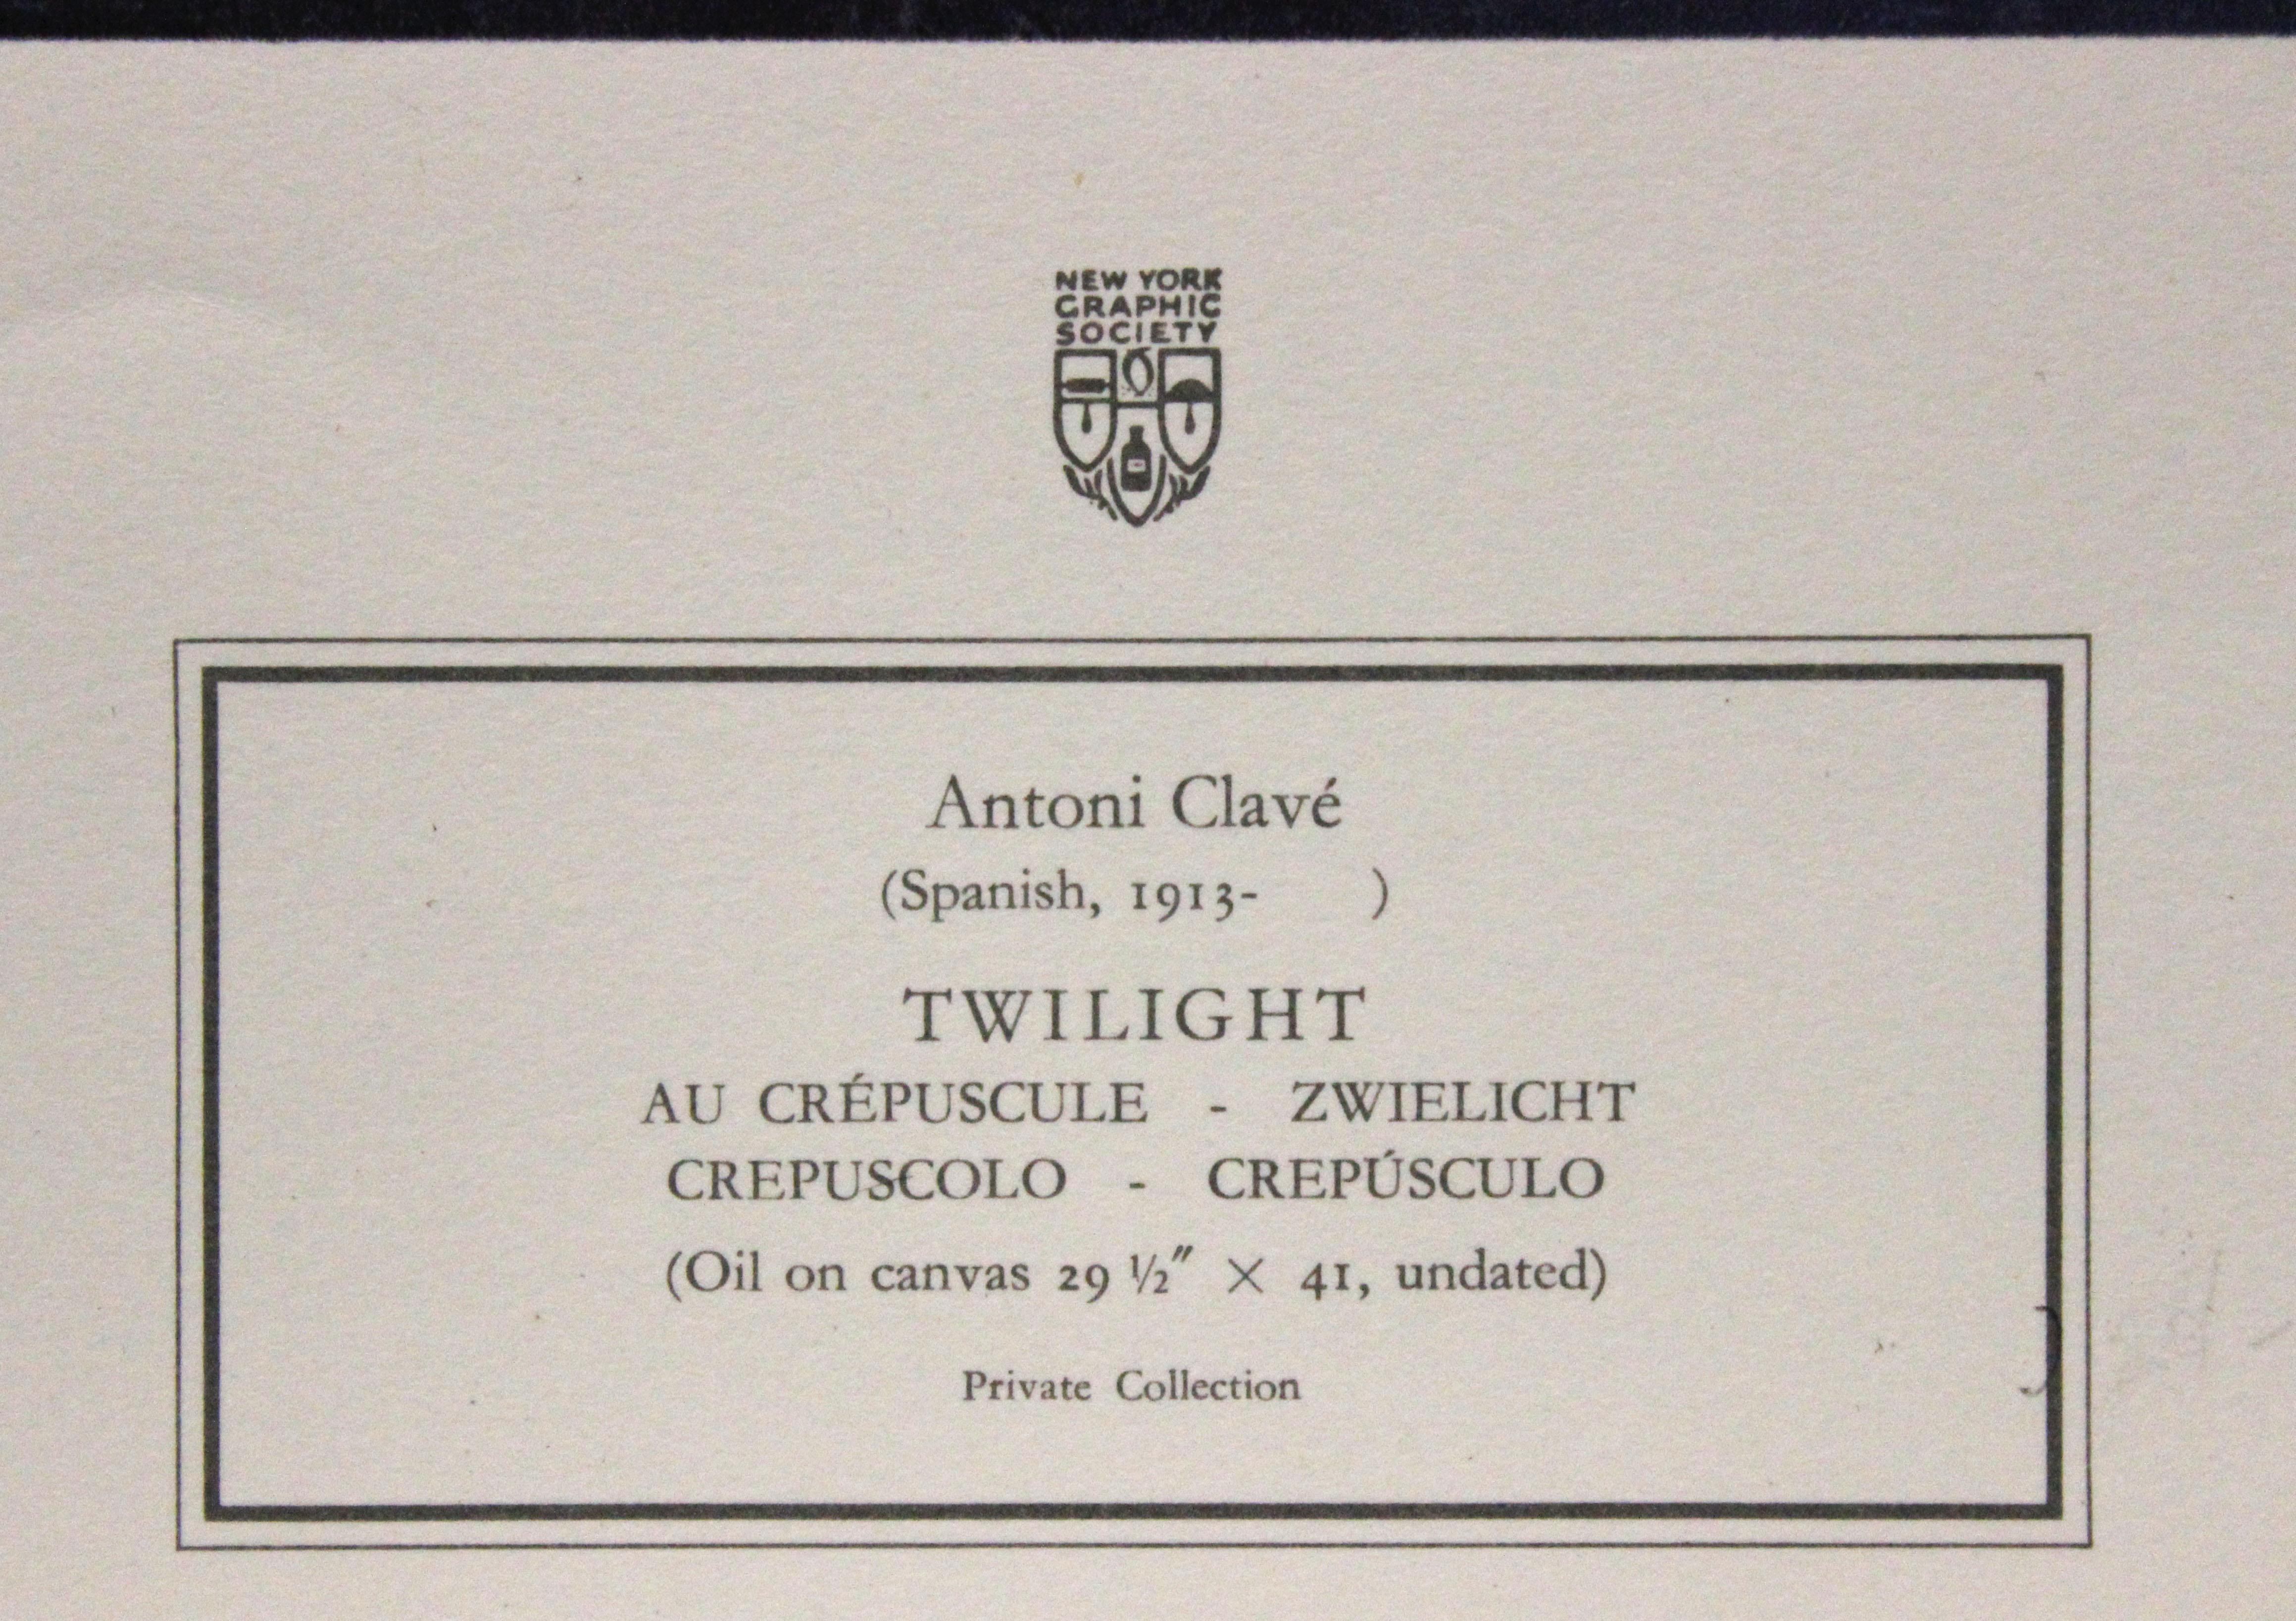 Affiche de Twilight-Poster, New York Graphic Society. Imprimé en Suisse.  - Print de Antoni Clavé